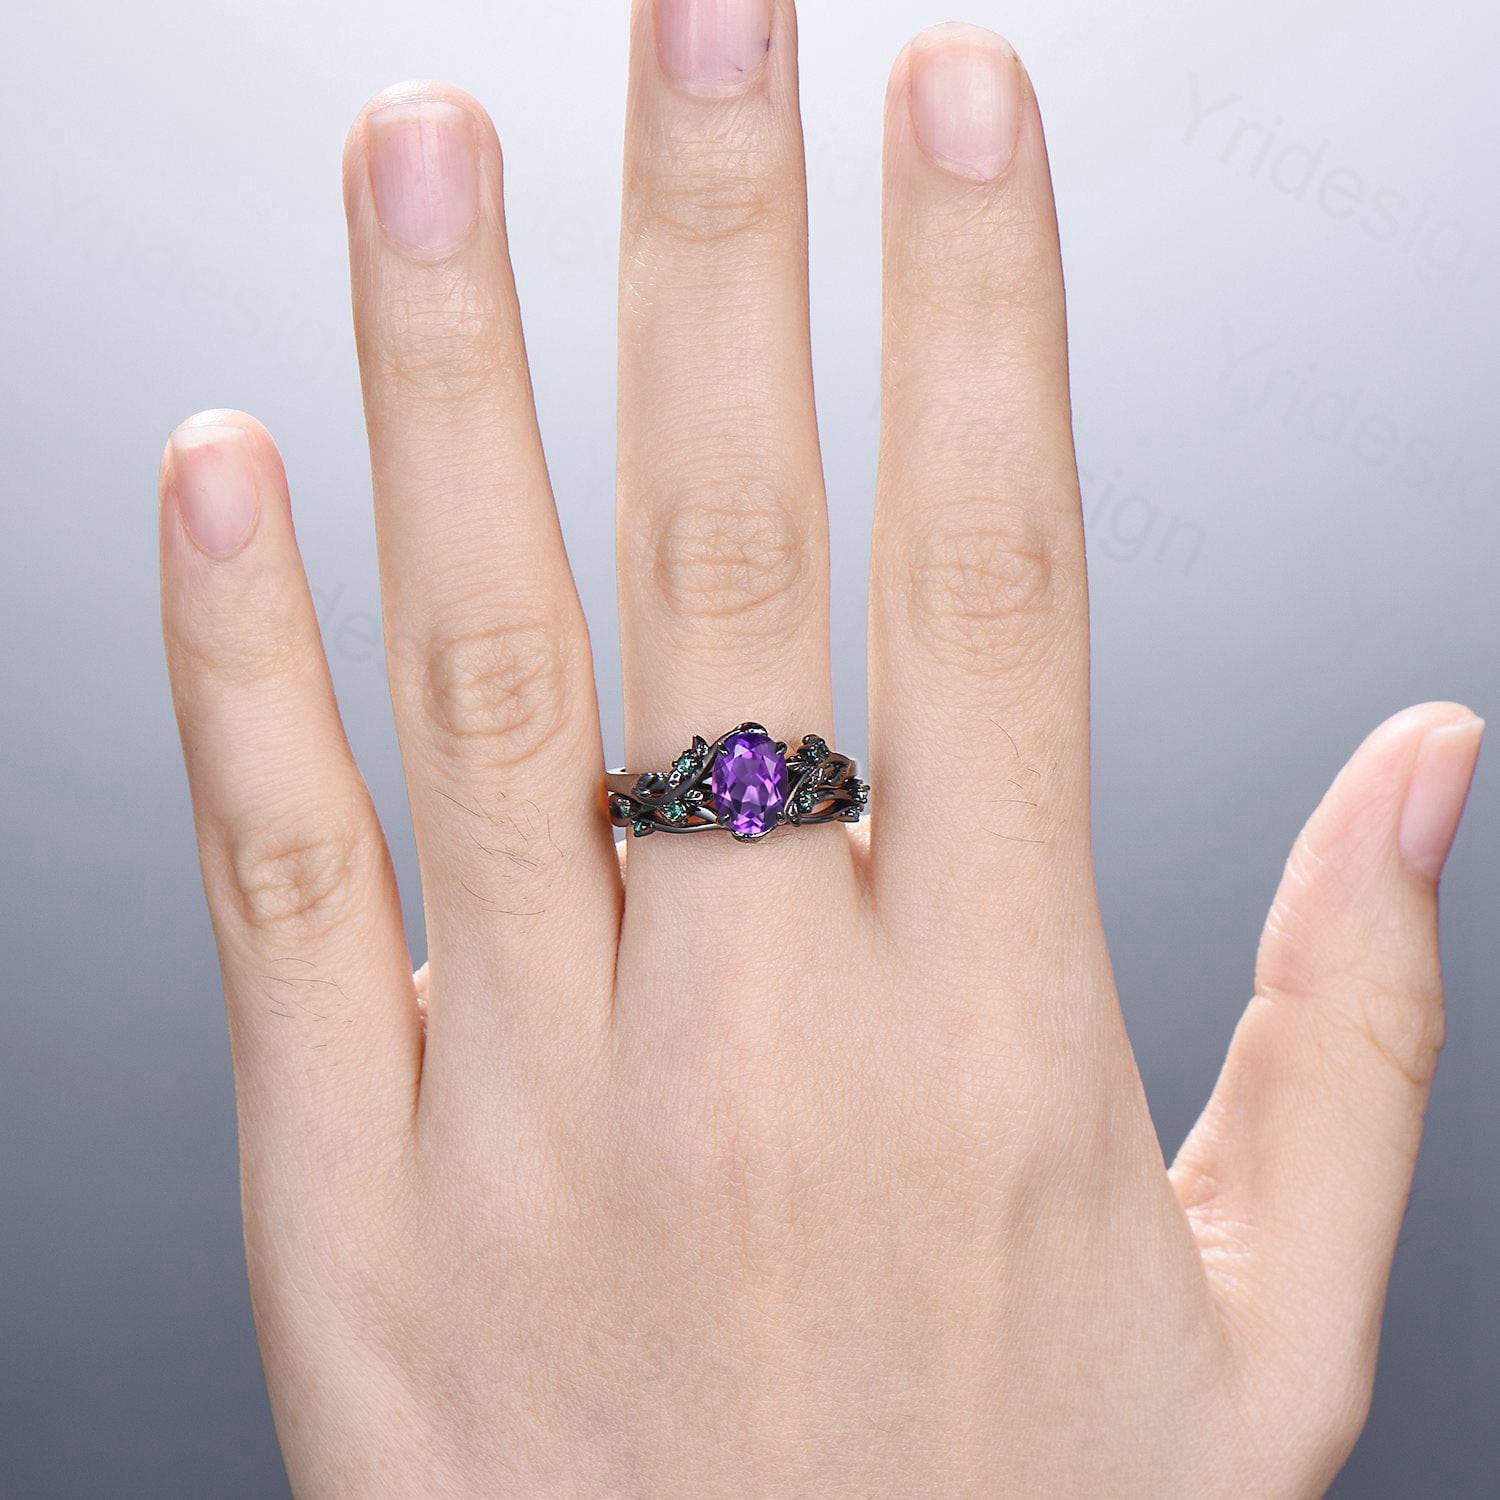 Unique black gold amethyst ring set Nature Inspired purple amethyst engagement ring vintage cluster emerald Leaf wedding ring set for women - PENFINE